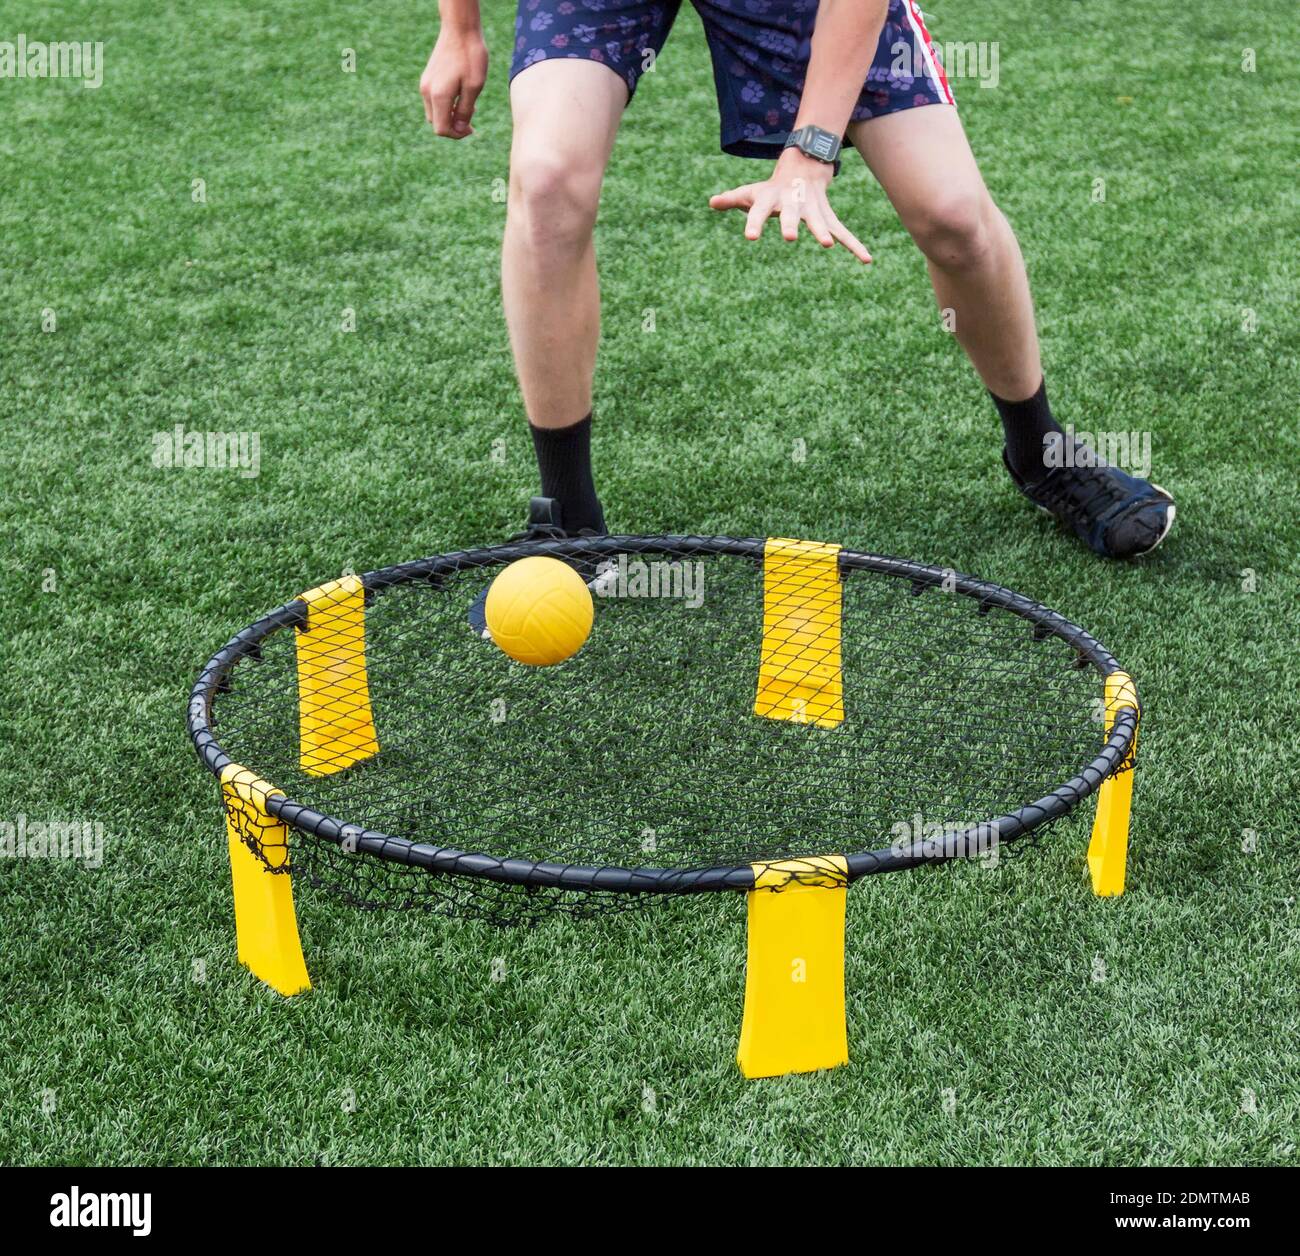 Coupe basse de l'homme jouant avec le ballon sur trampoline Photo Stock -  Alamy